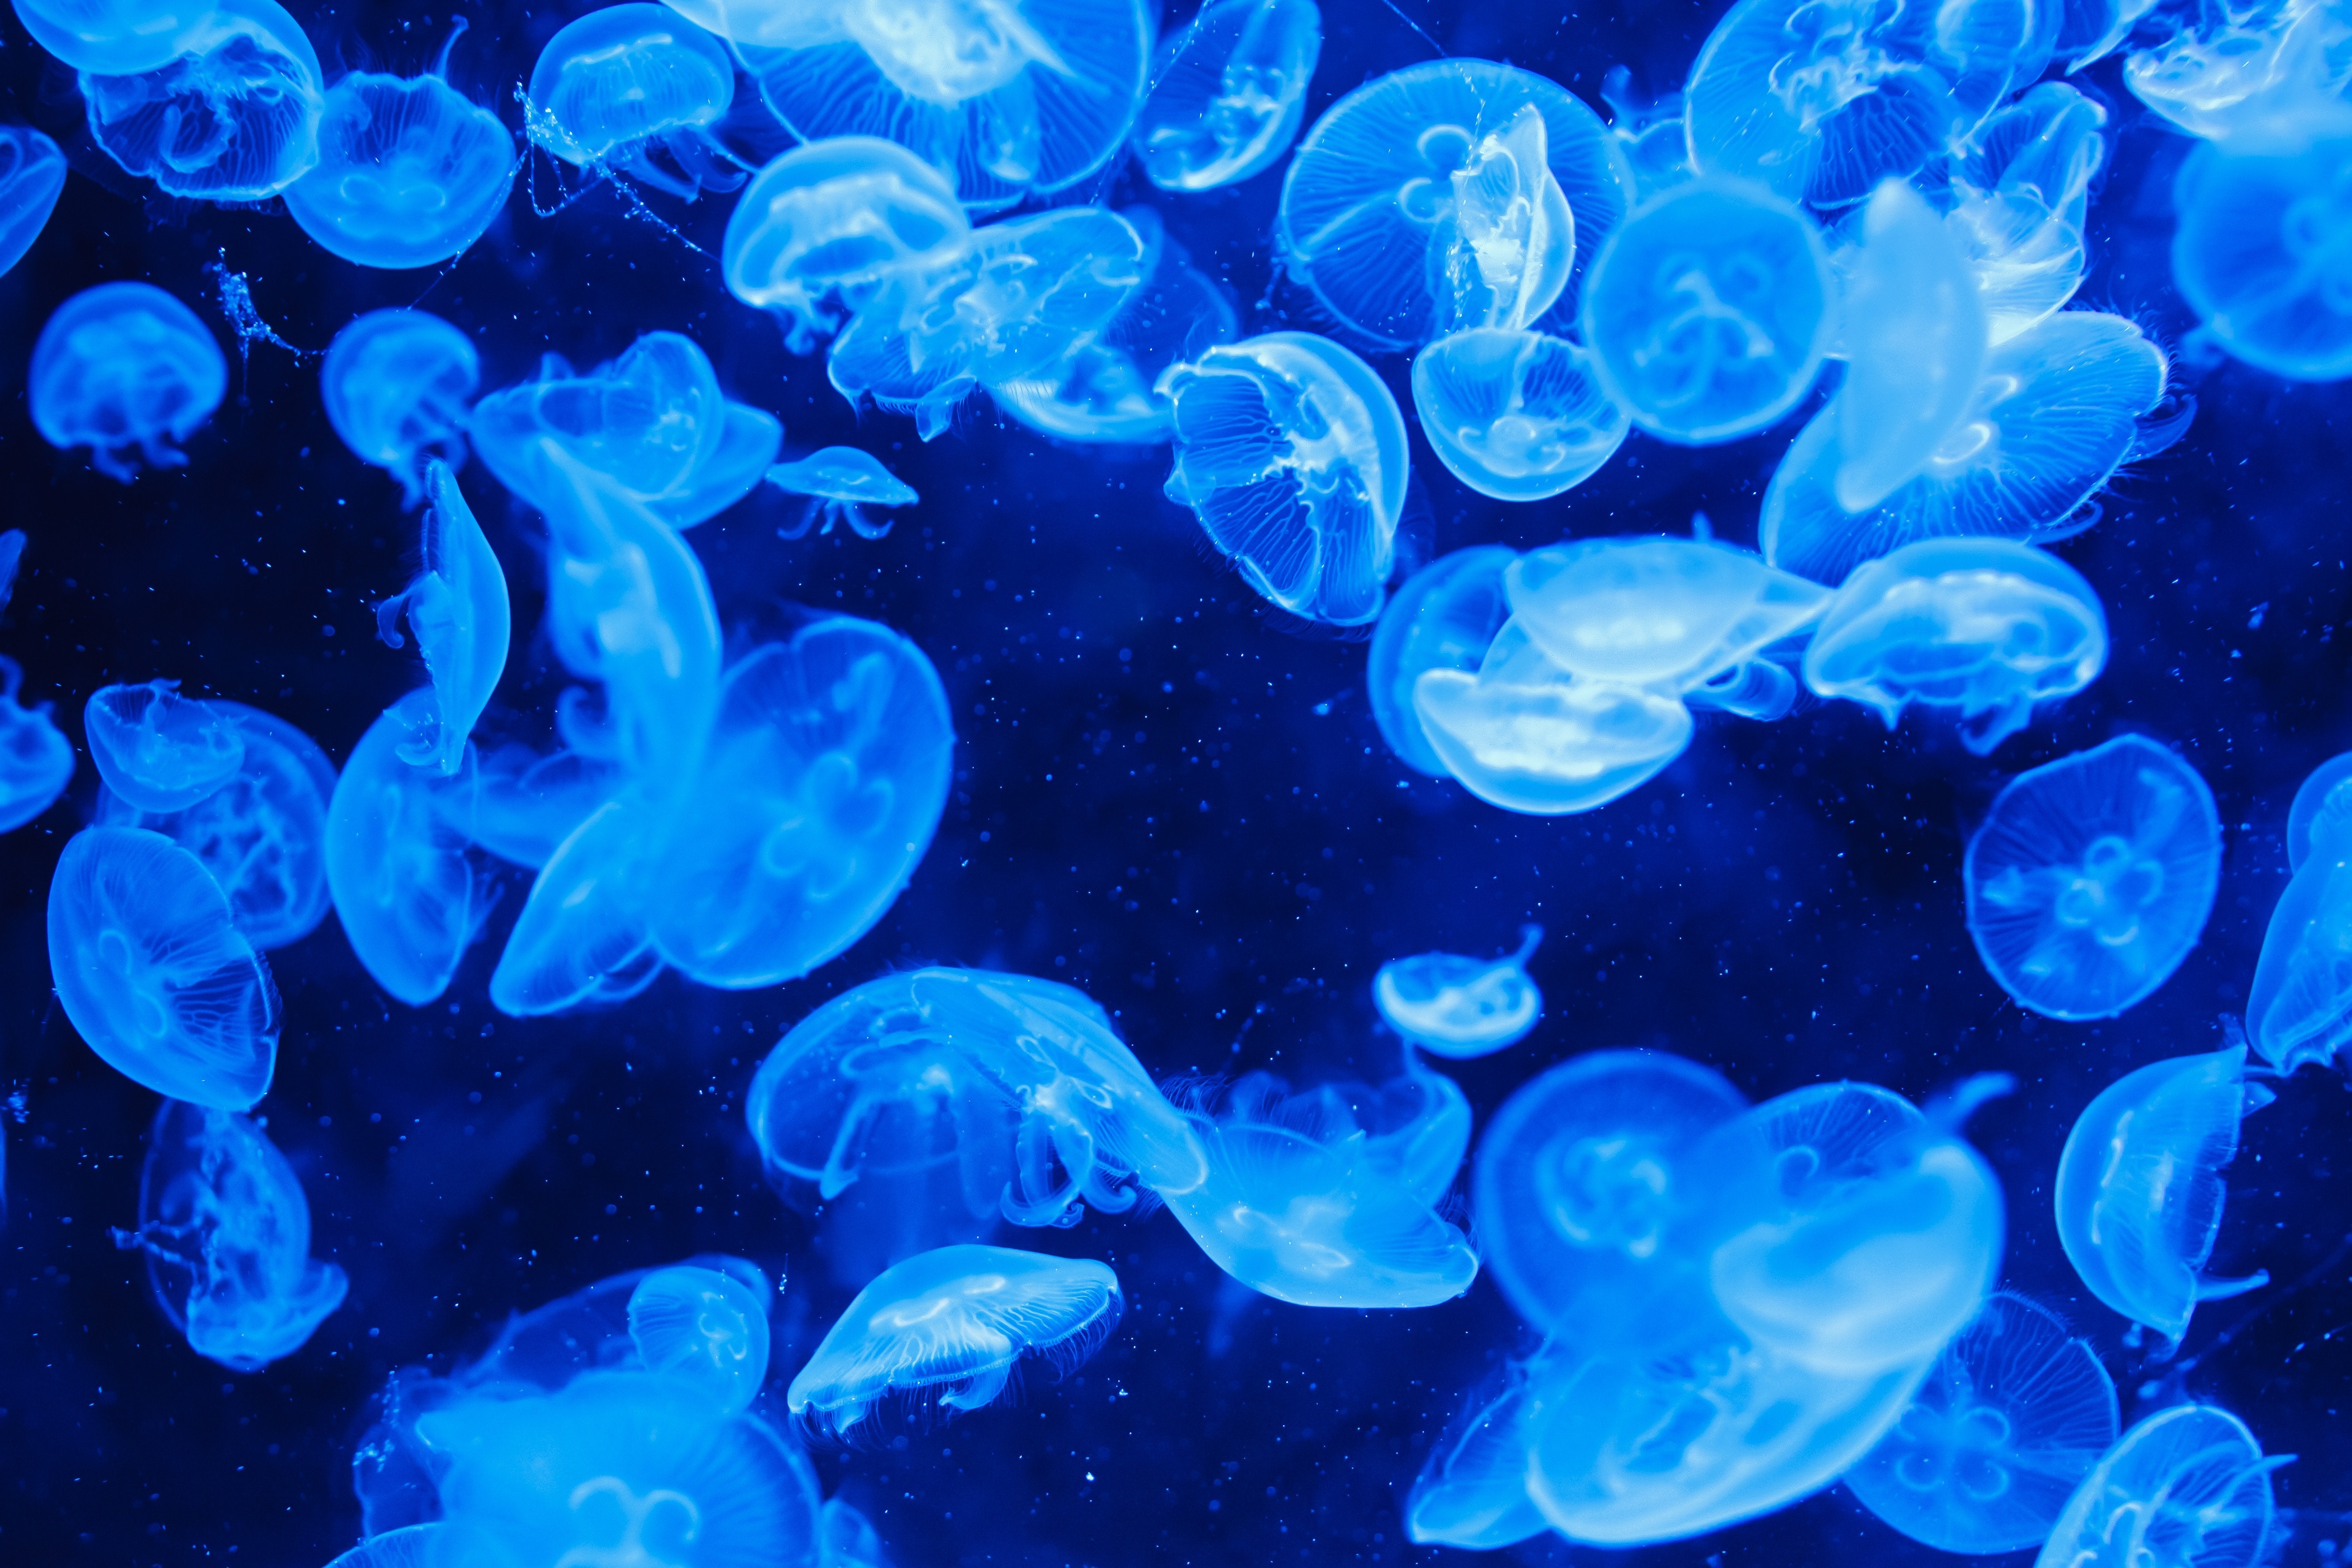 Blue jelly fish photo